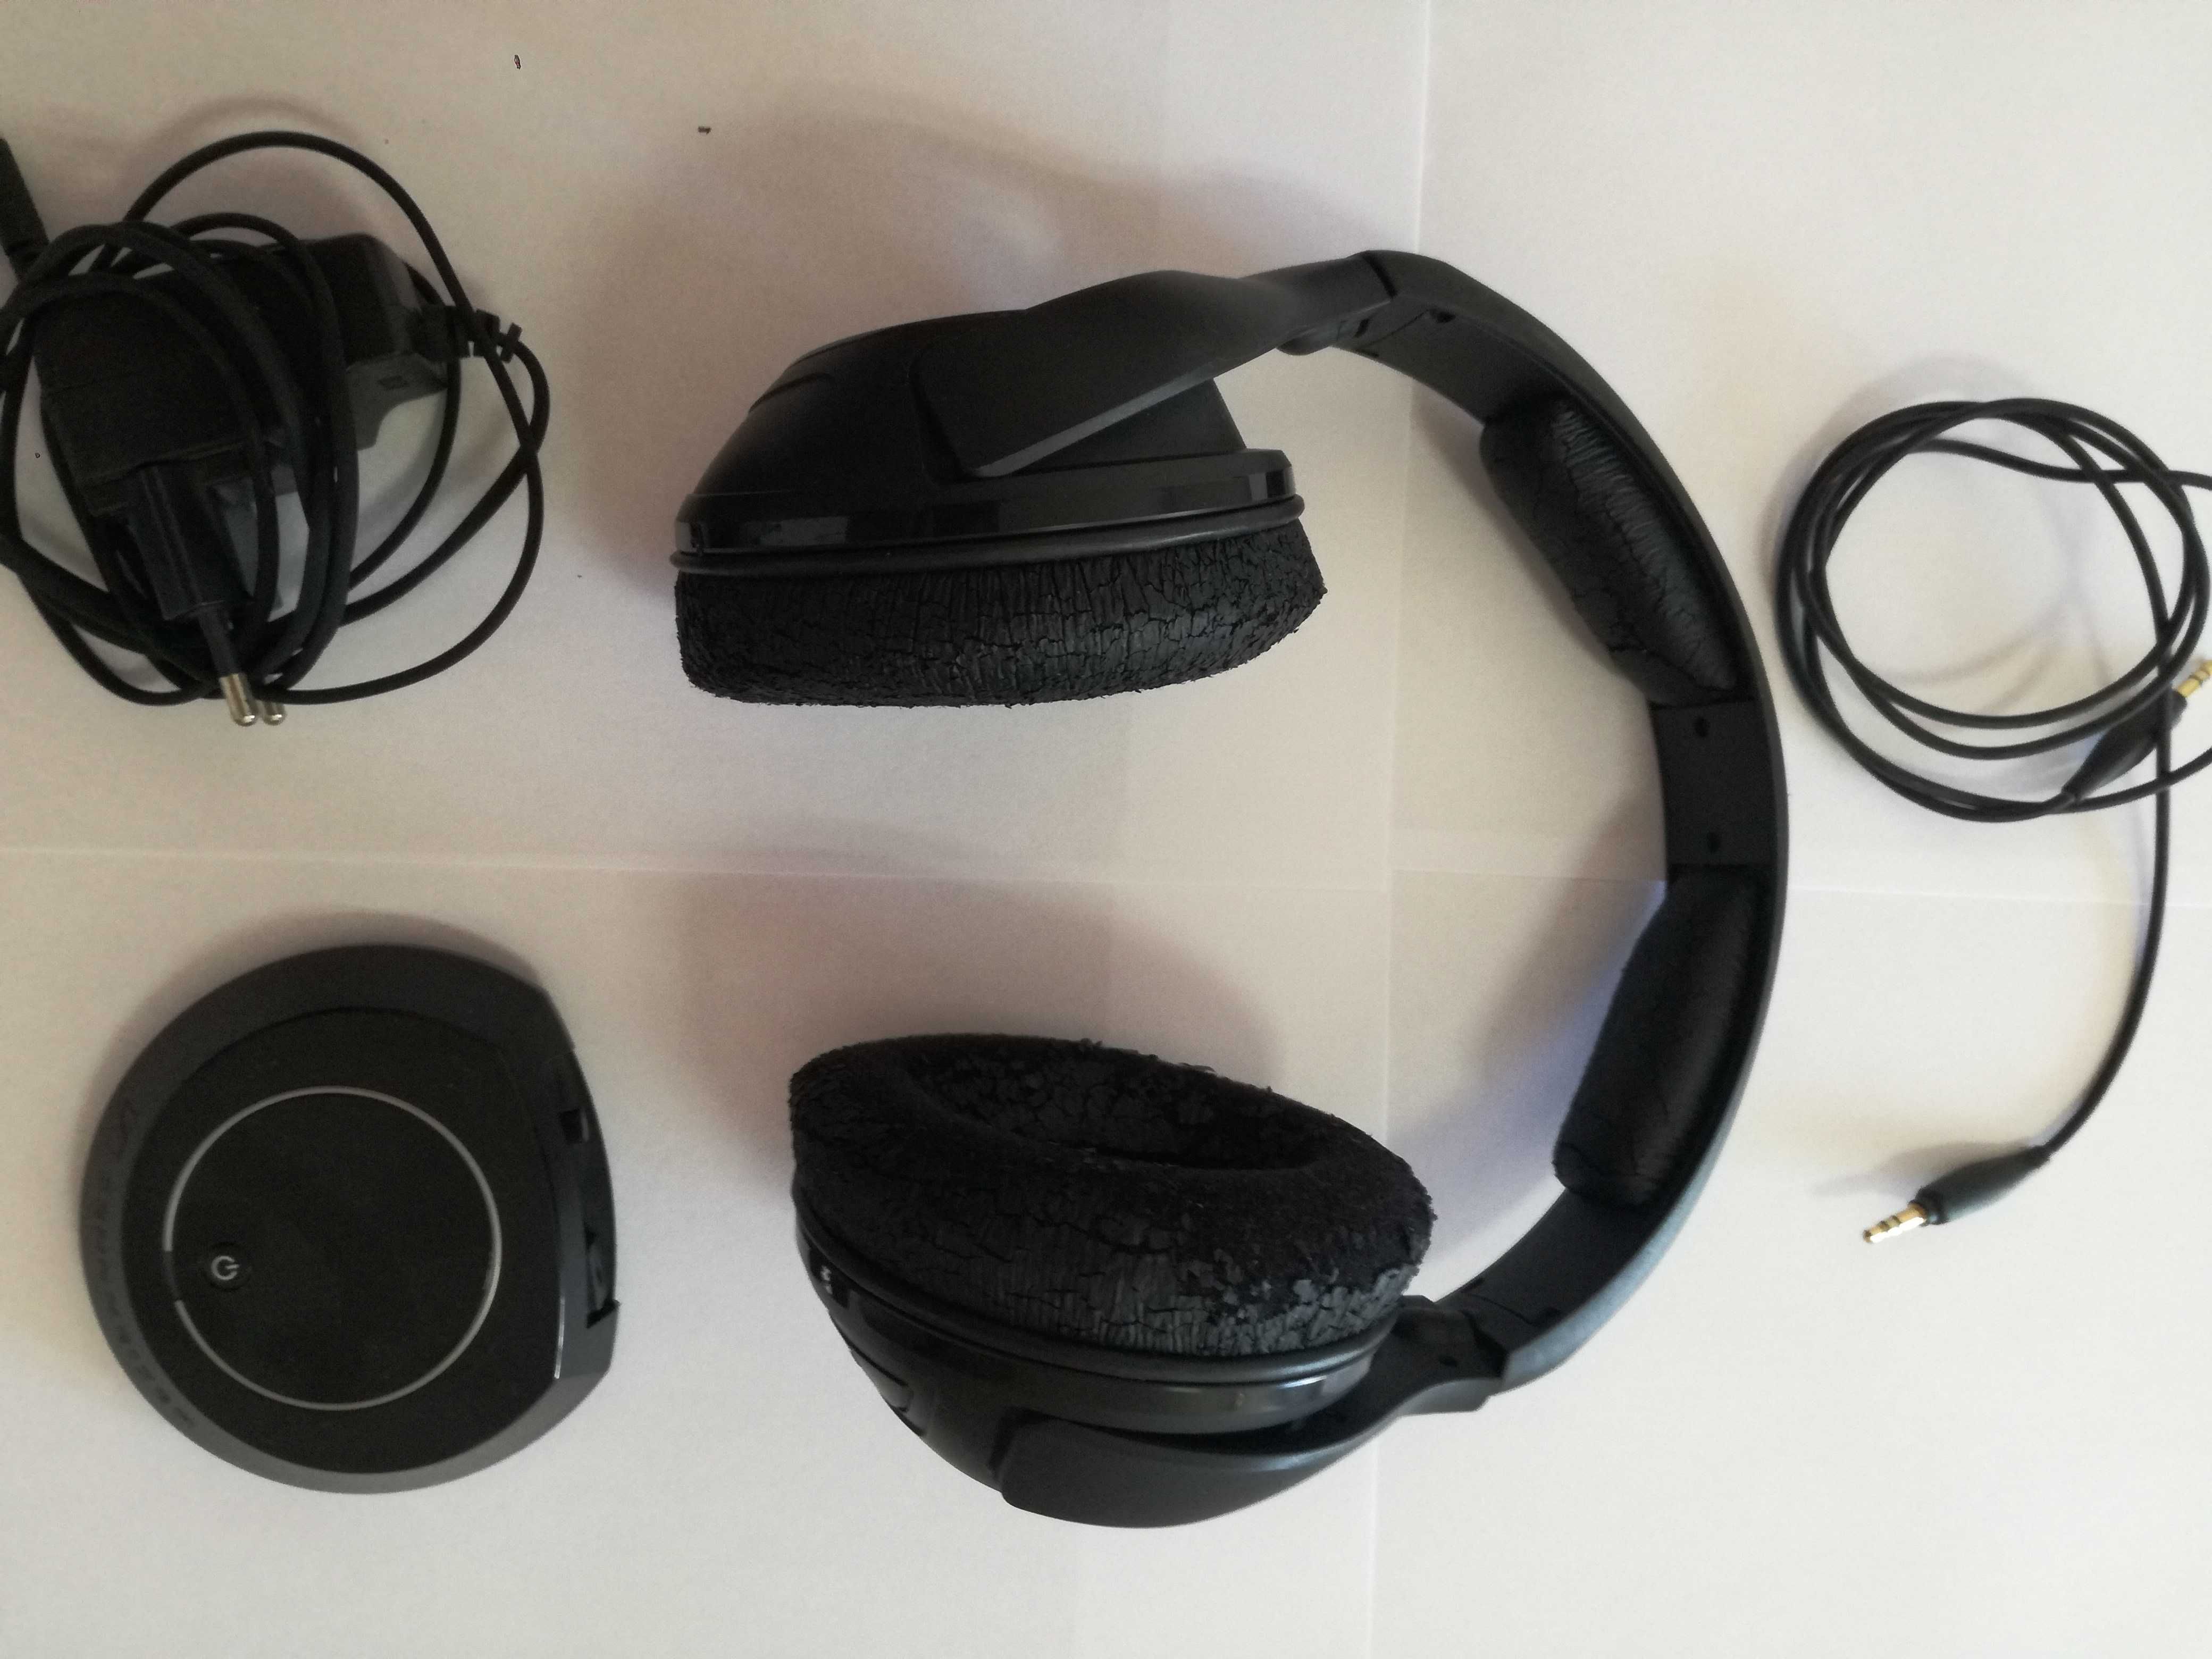 Słuchawki bezprzewodowe Sennheiser HDR 160 zestaw bezprzewodowy